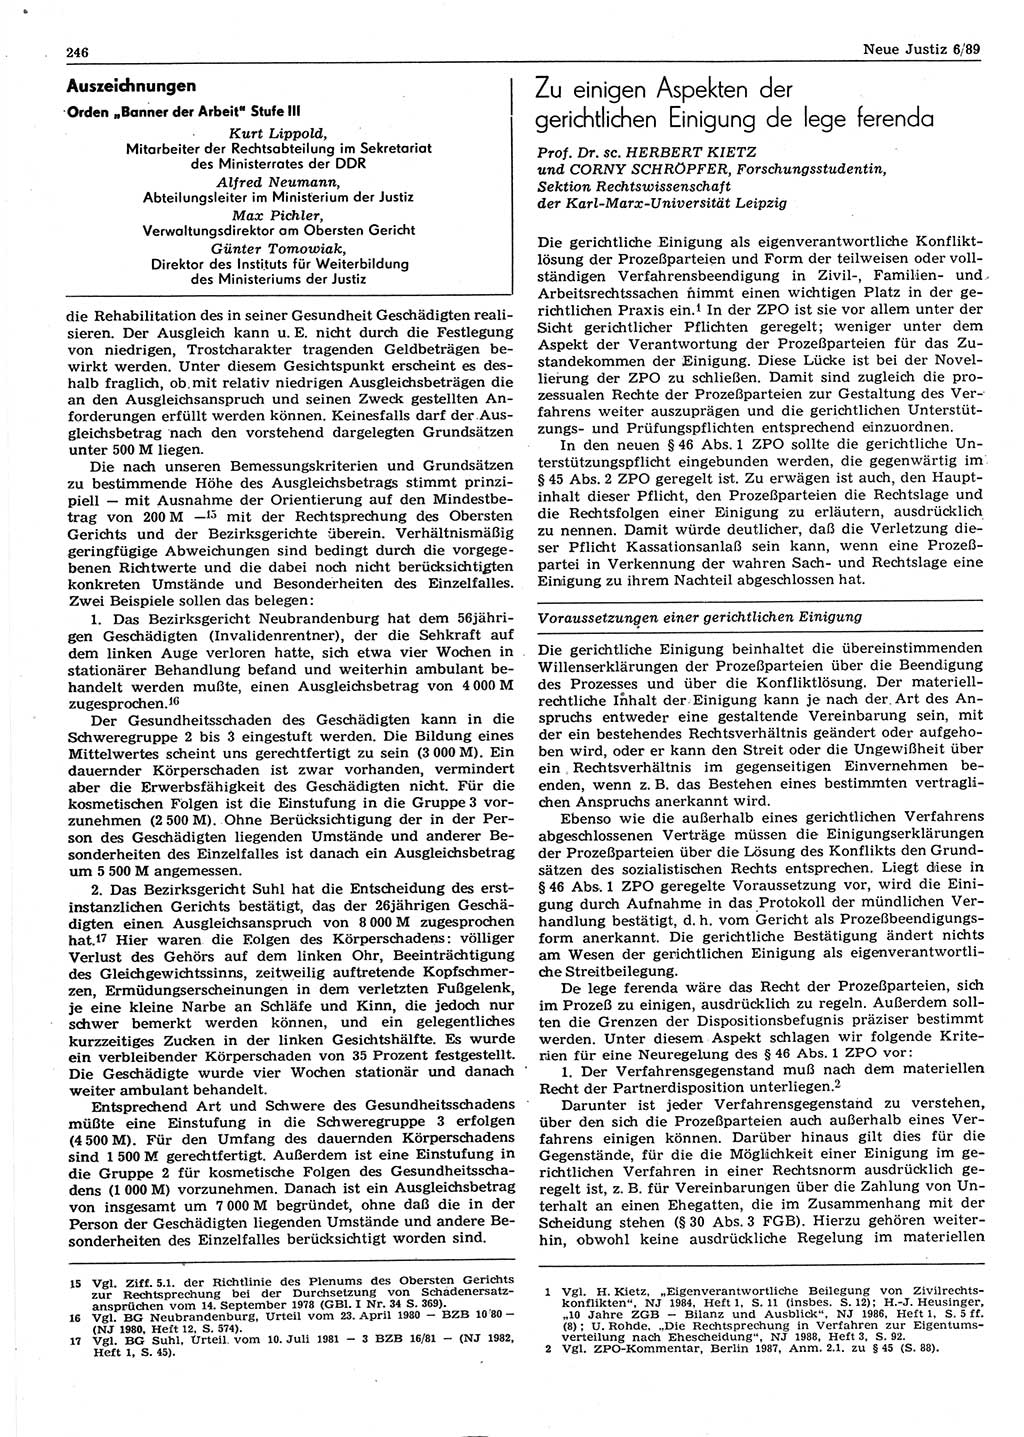 Neue Justiz (NJ), Zeitschrift für sozialistisches Recht und Gesetzlichkeit [Deutsche Demokratische Republik (DDR)], 43. Jahrgang 1989, Seite 246 (NJ DDR 1989, S. 246)